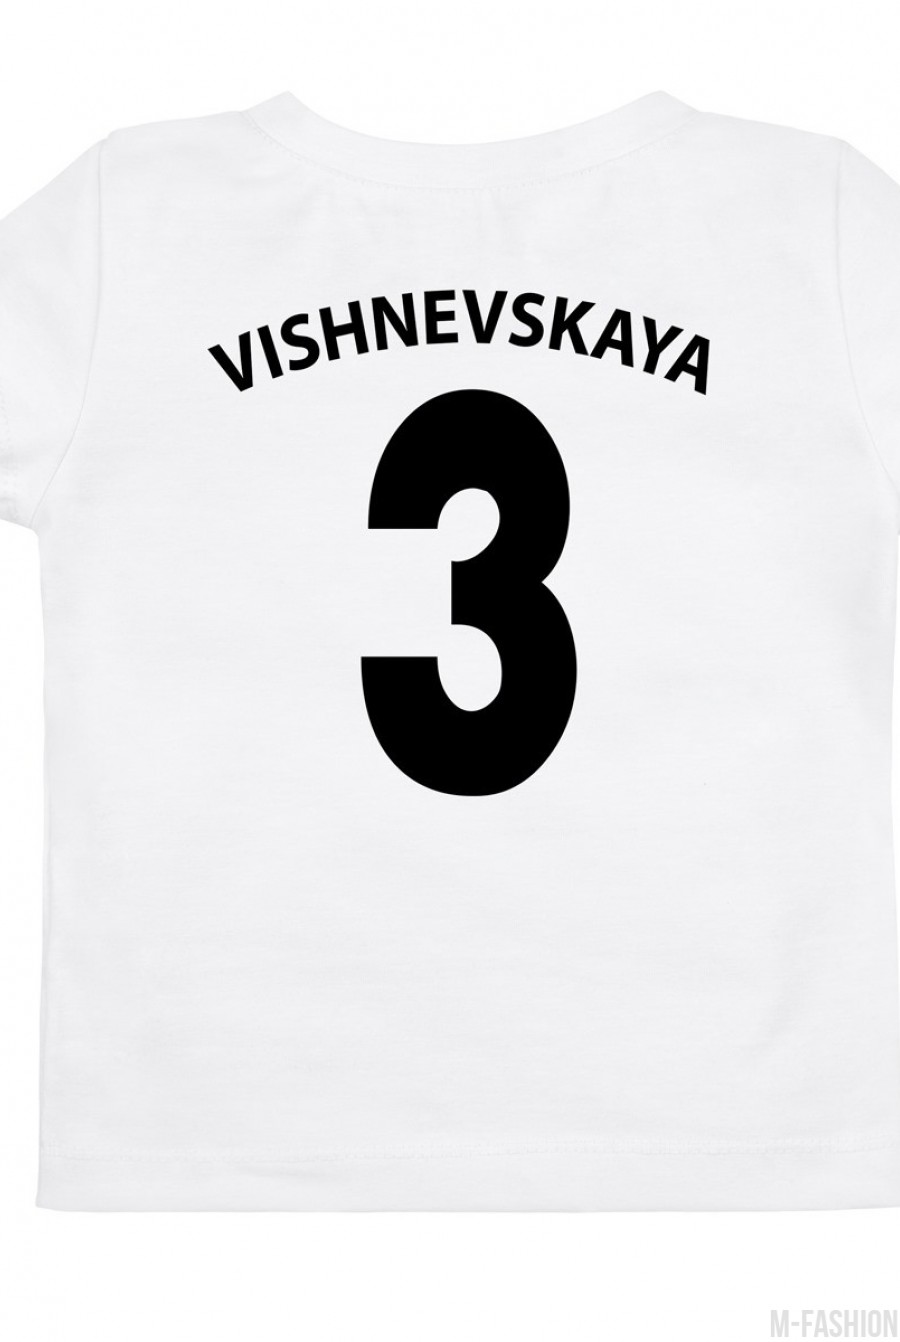 Белая трикотажная футболка с возможностью индивидуальной печати фамилии и номера на принте - Фото 1